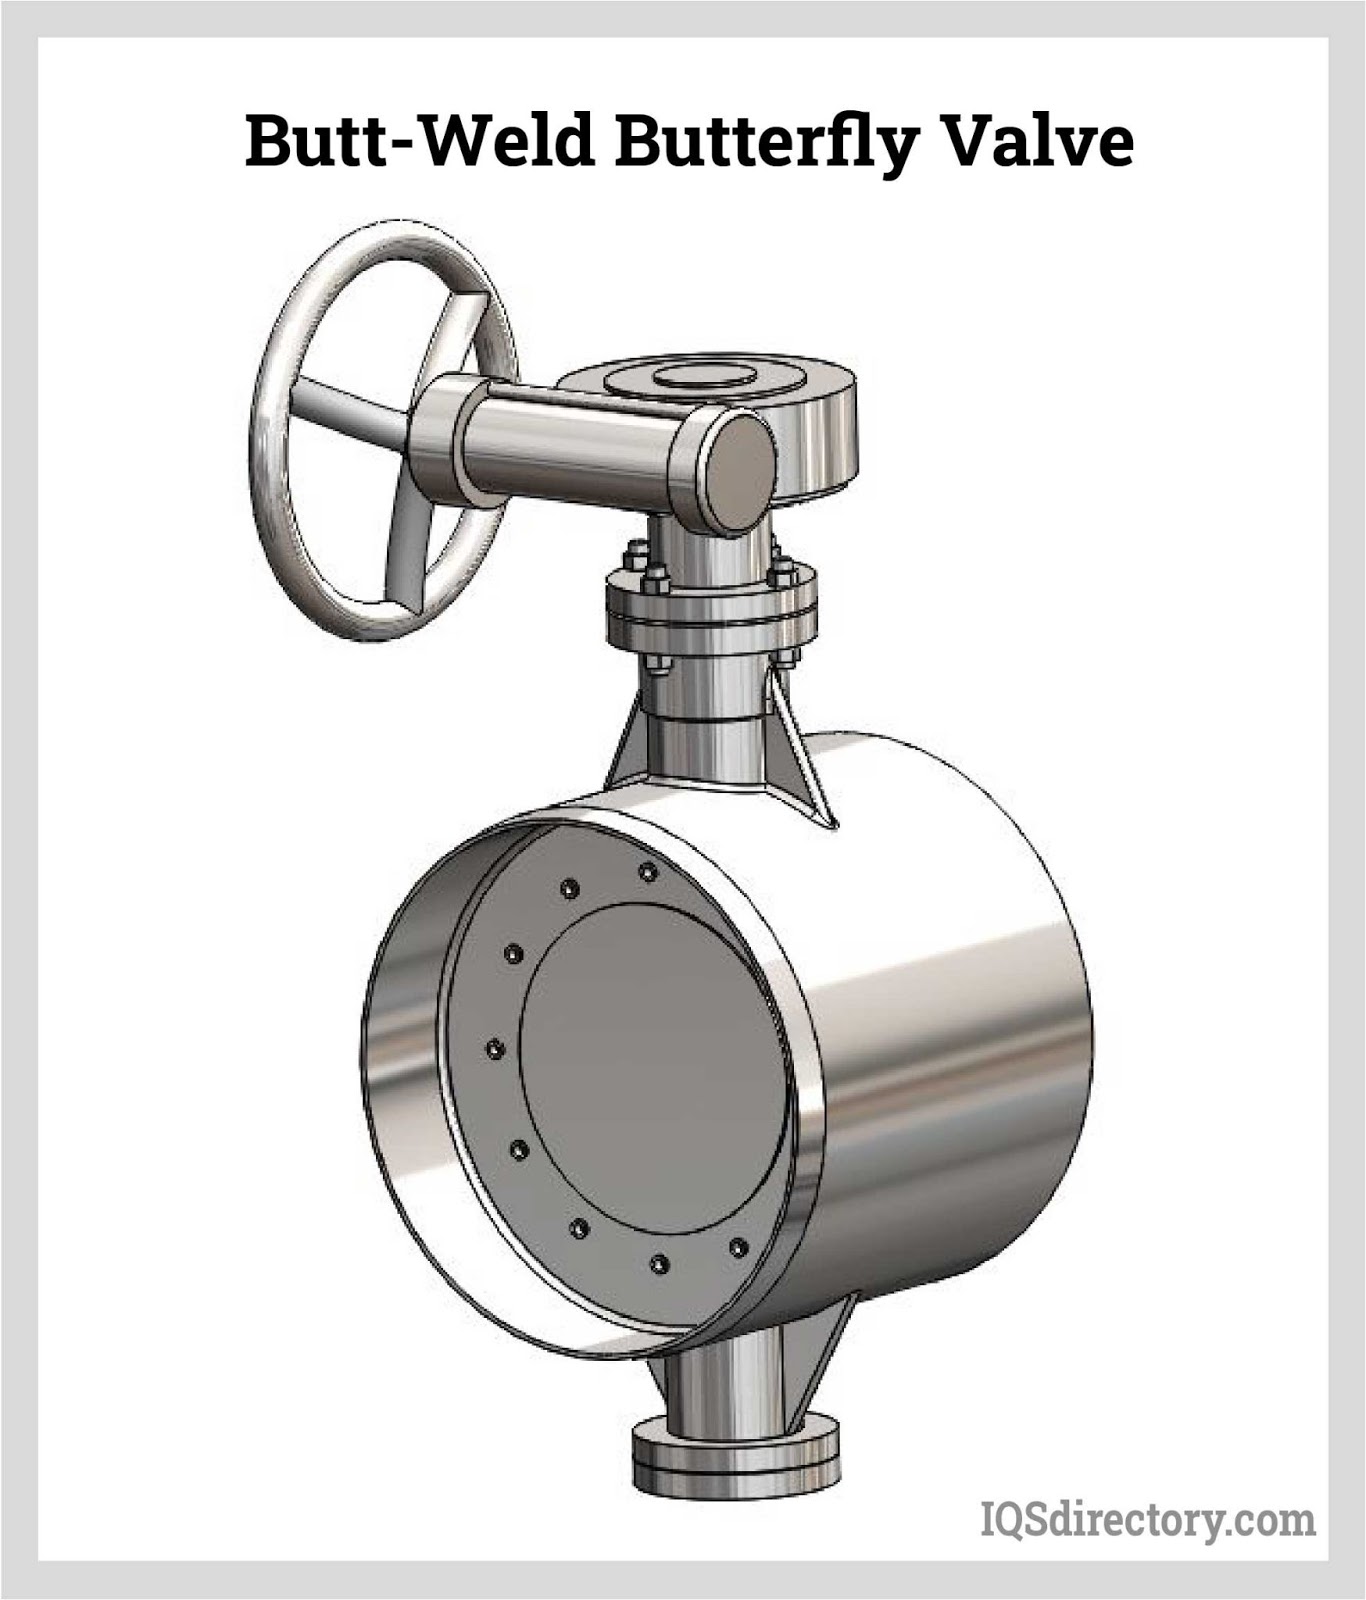 Butt-Weld Butterfly Valve